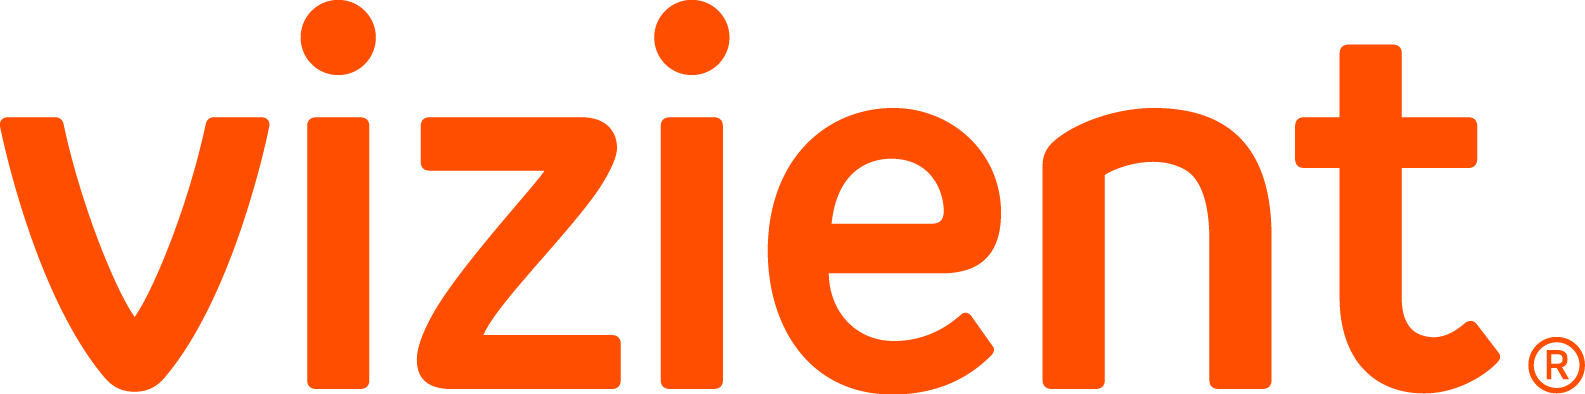 Vizient Orange Logo